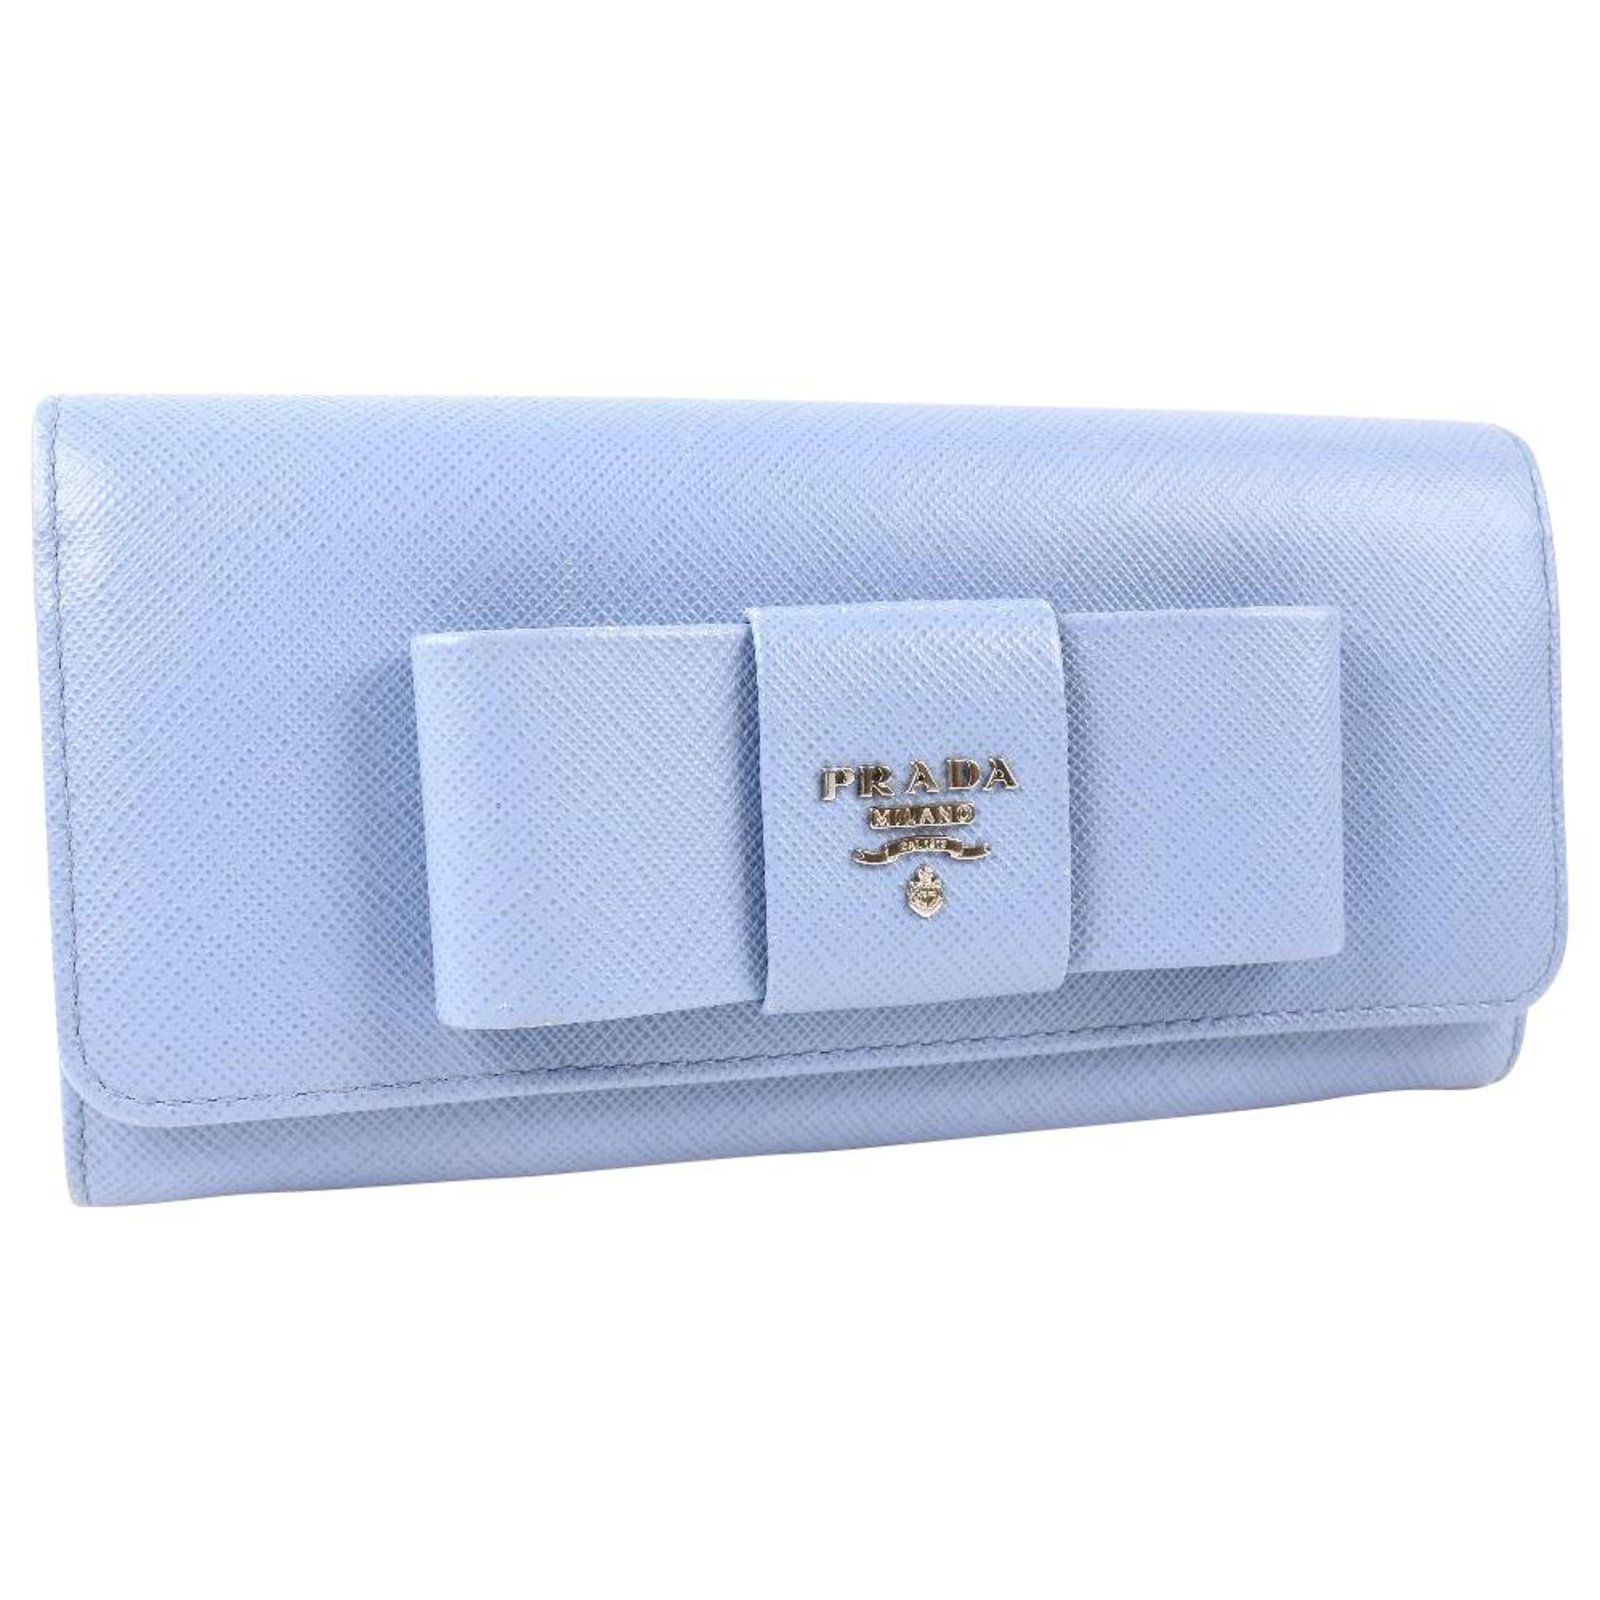 Prada Blue Wallets for Women